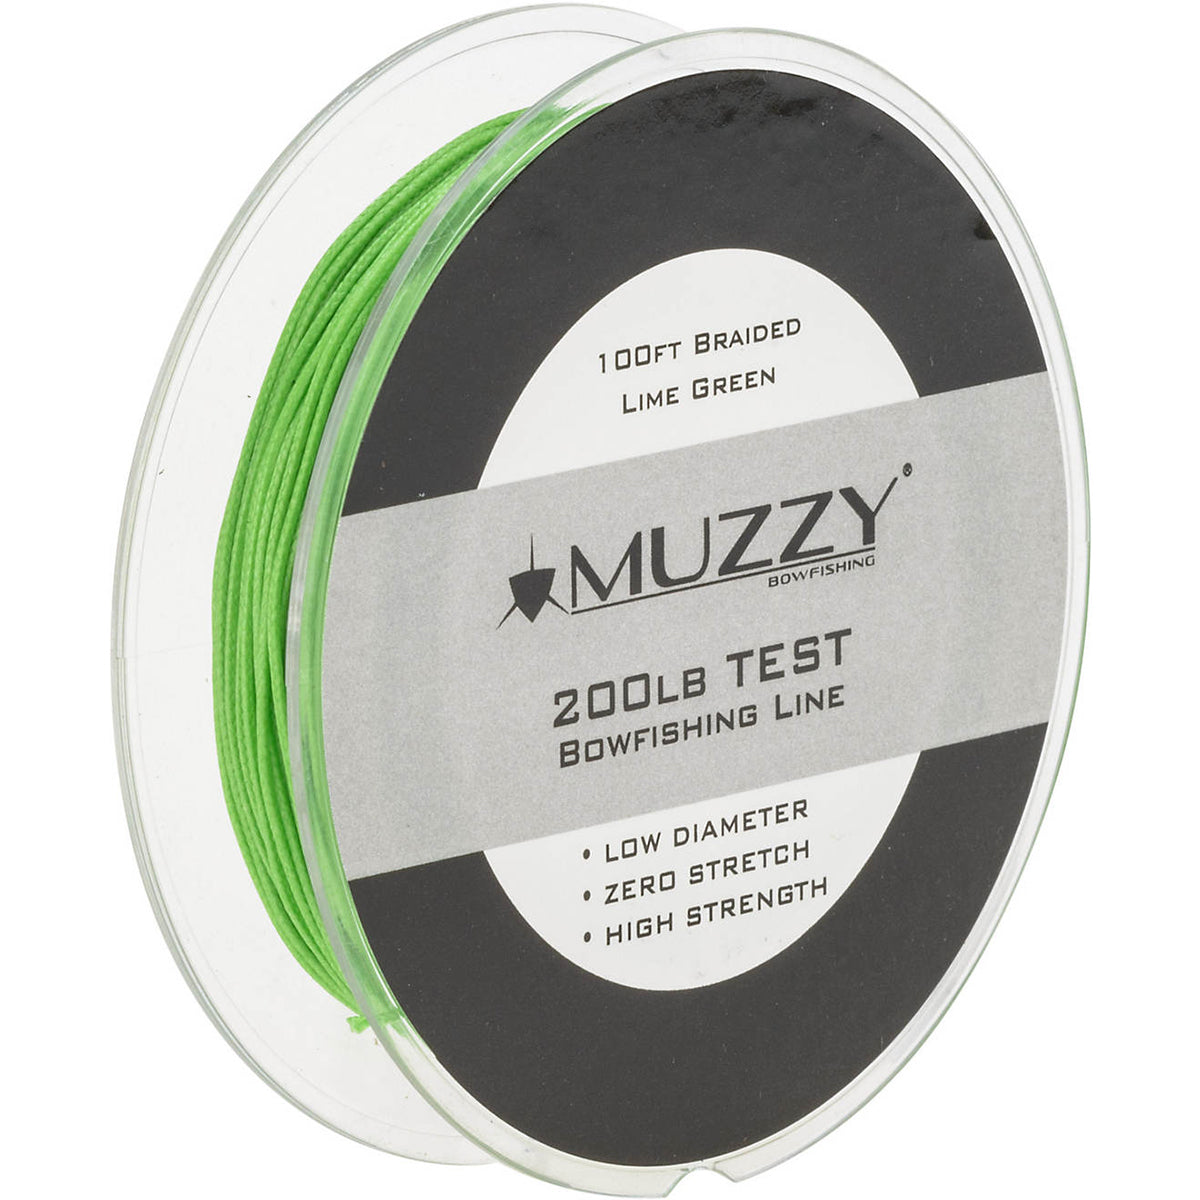 Muzzy Bowfishing Lime Green 200# Braided Bowfishing Line - 100 ft. Spool Muzzy